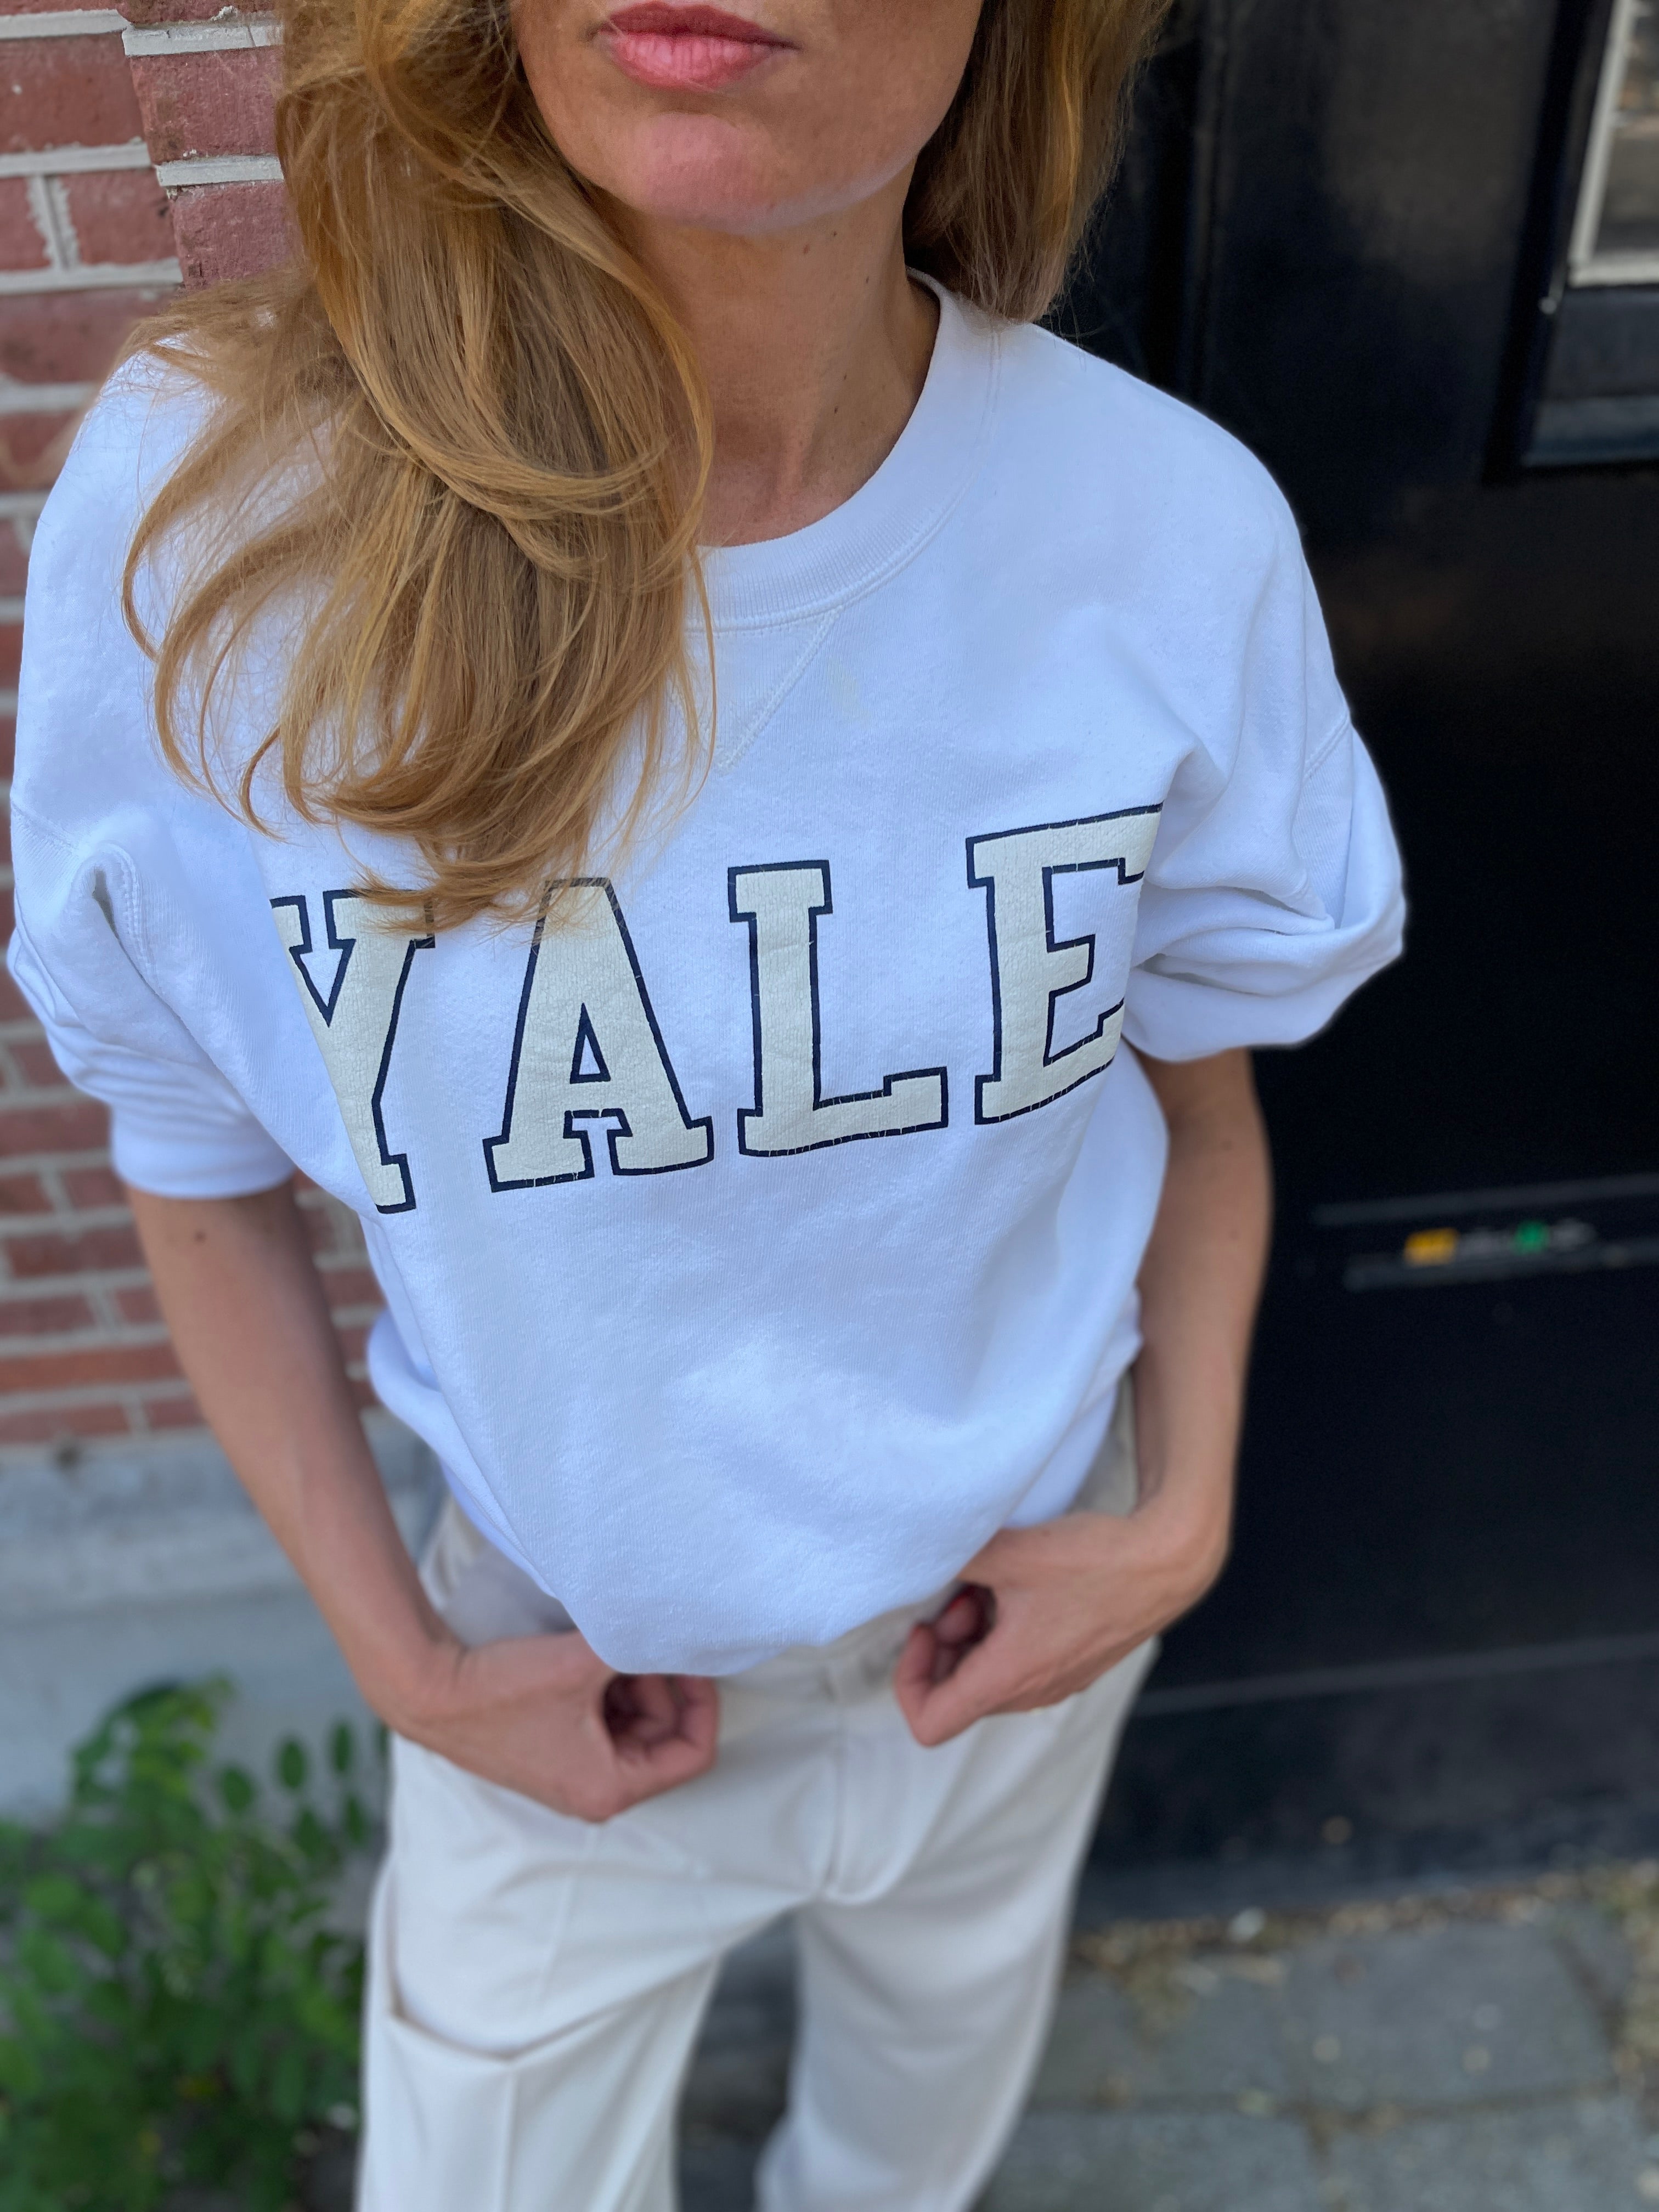 white Yale college sweatshirt